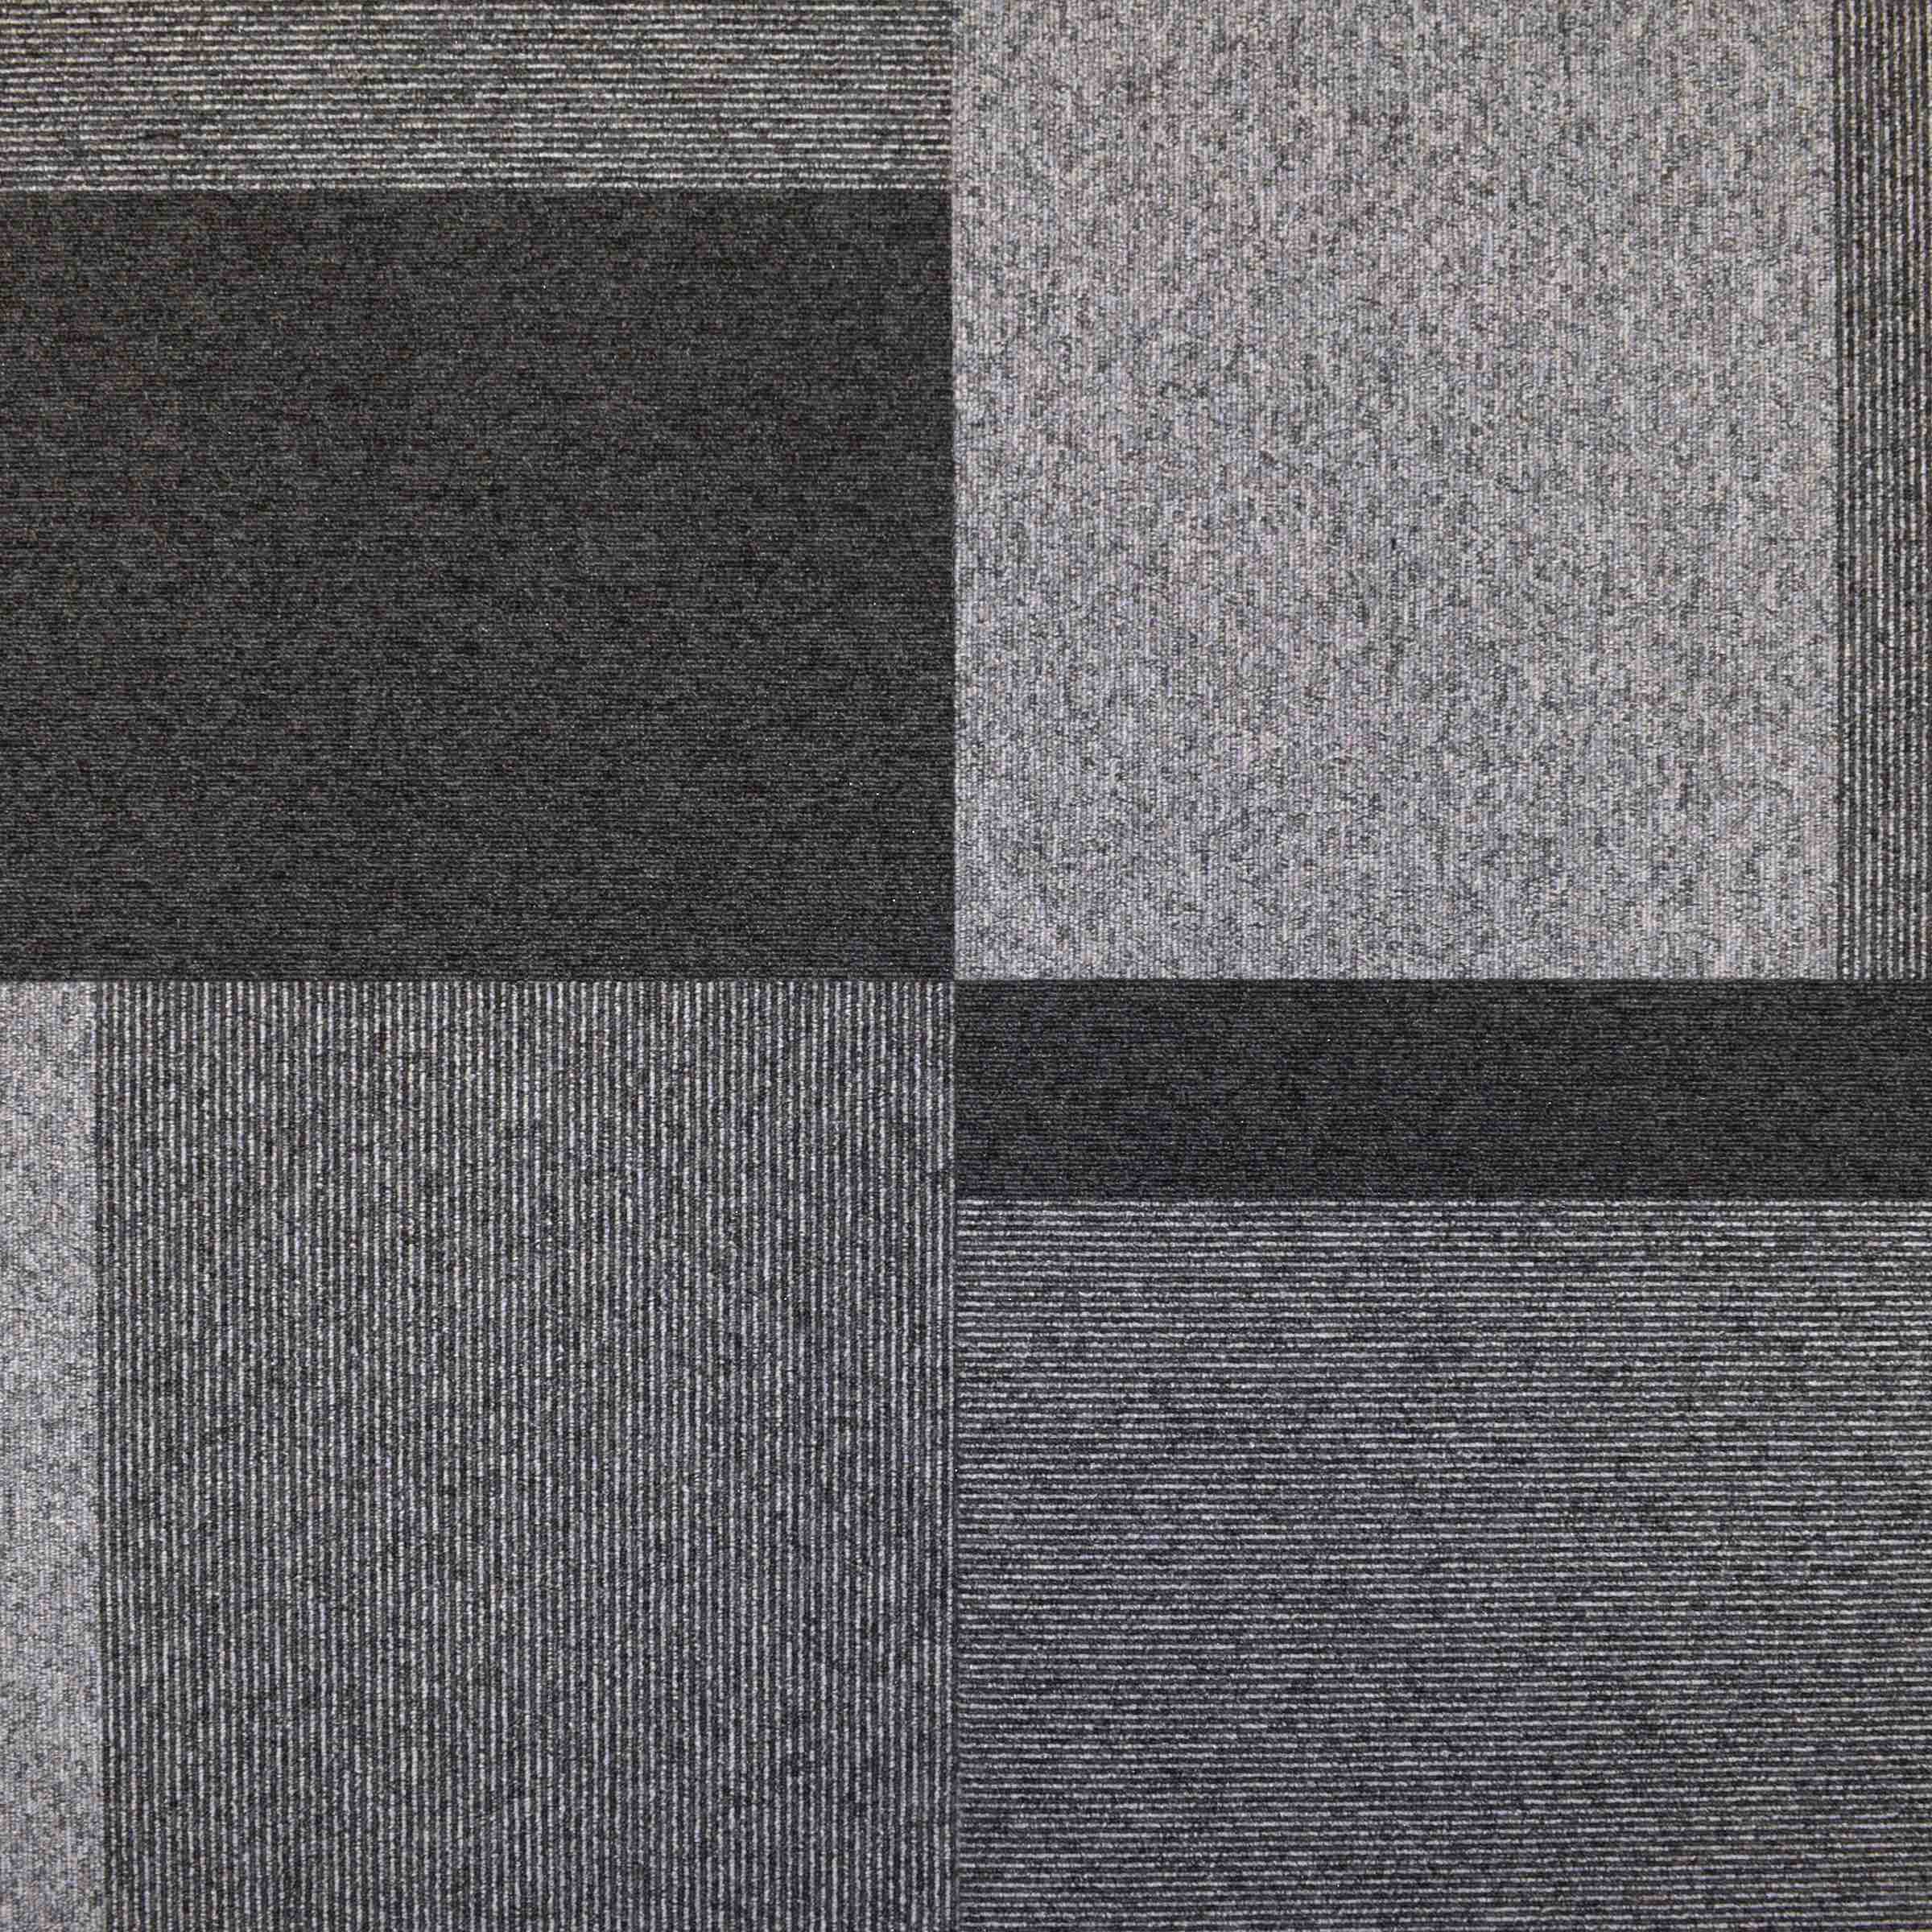 Total Contrast | Chrome Pelt | Paragon Carpet Tiles | Commercial Carpet Tiles